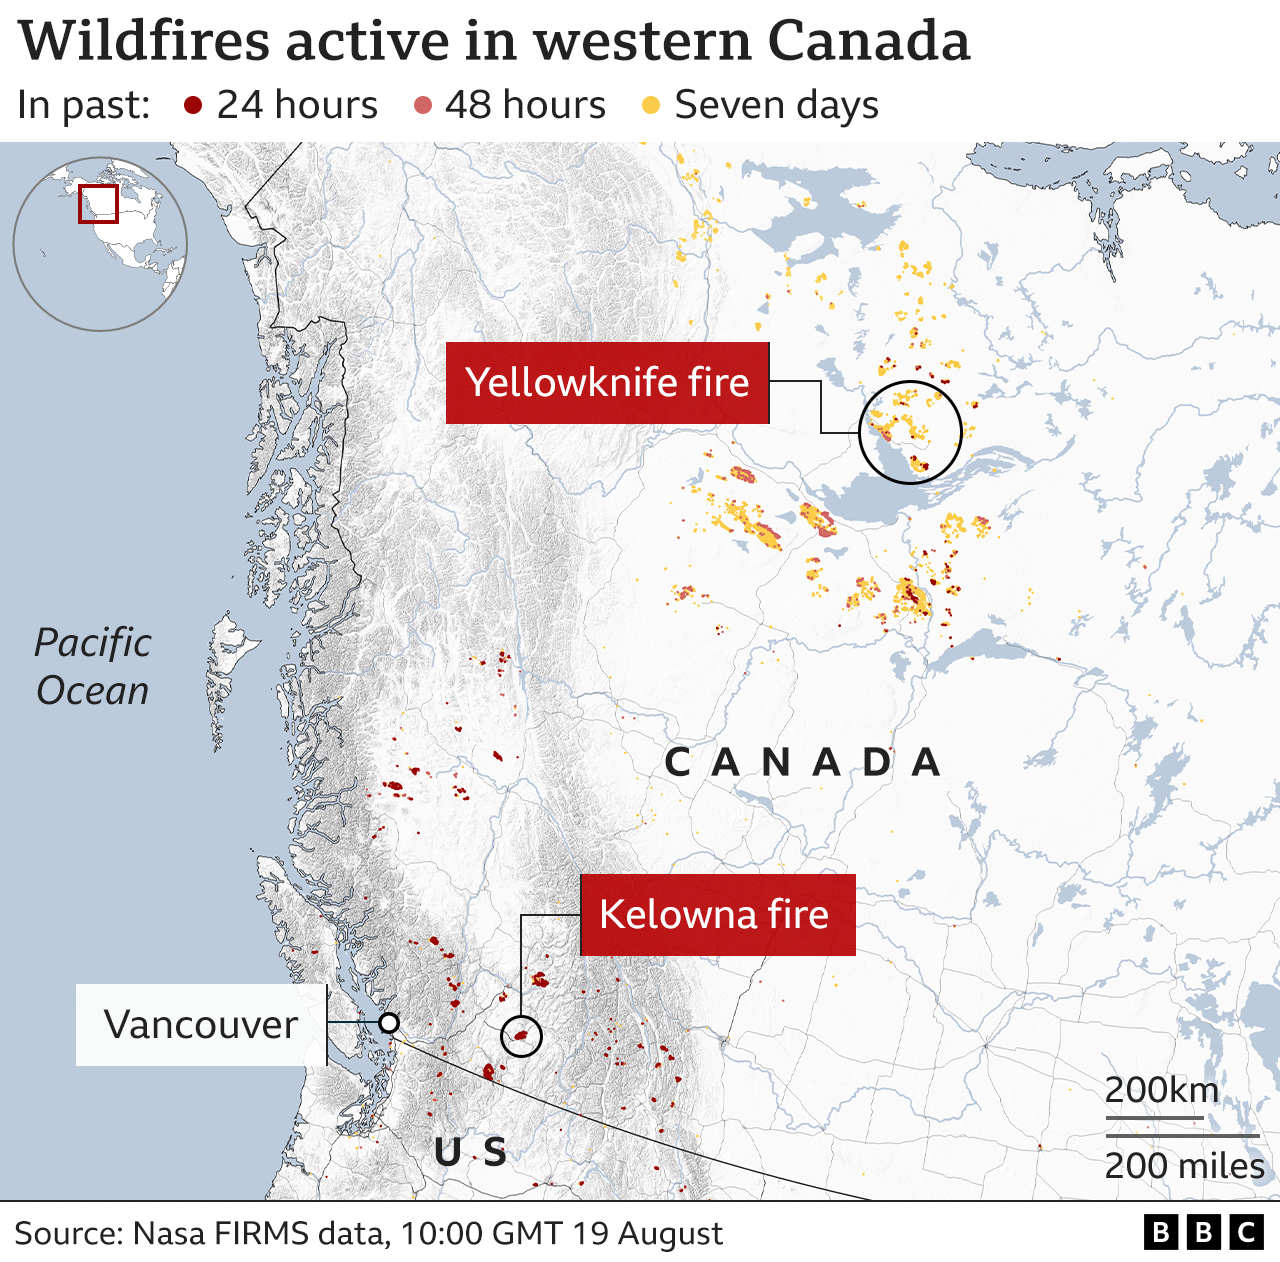 Mapa de la BBC titulado "incendios forestales activos en el oeste de Canadá" actual a las 10:00 GMT del 19 de agosto.  Muestra incendios forestales activos repartidos por el oeste de Canadá.  Un grupo ha estado activo en las últimas 24 horas alrededor de Kelowna.  En una amplia región alrededor de Yellowknife, más al norte, varios incendios han estado ardiendo durante siete días.